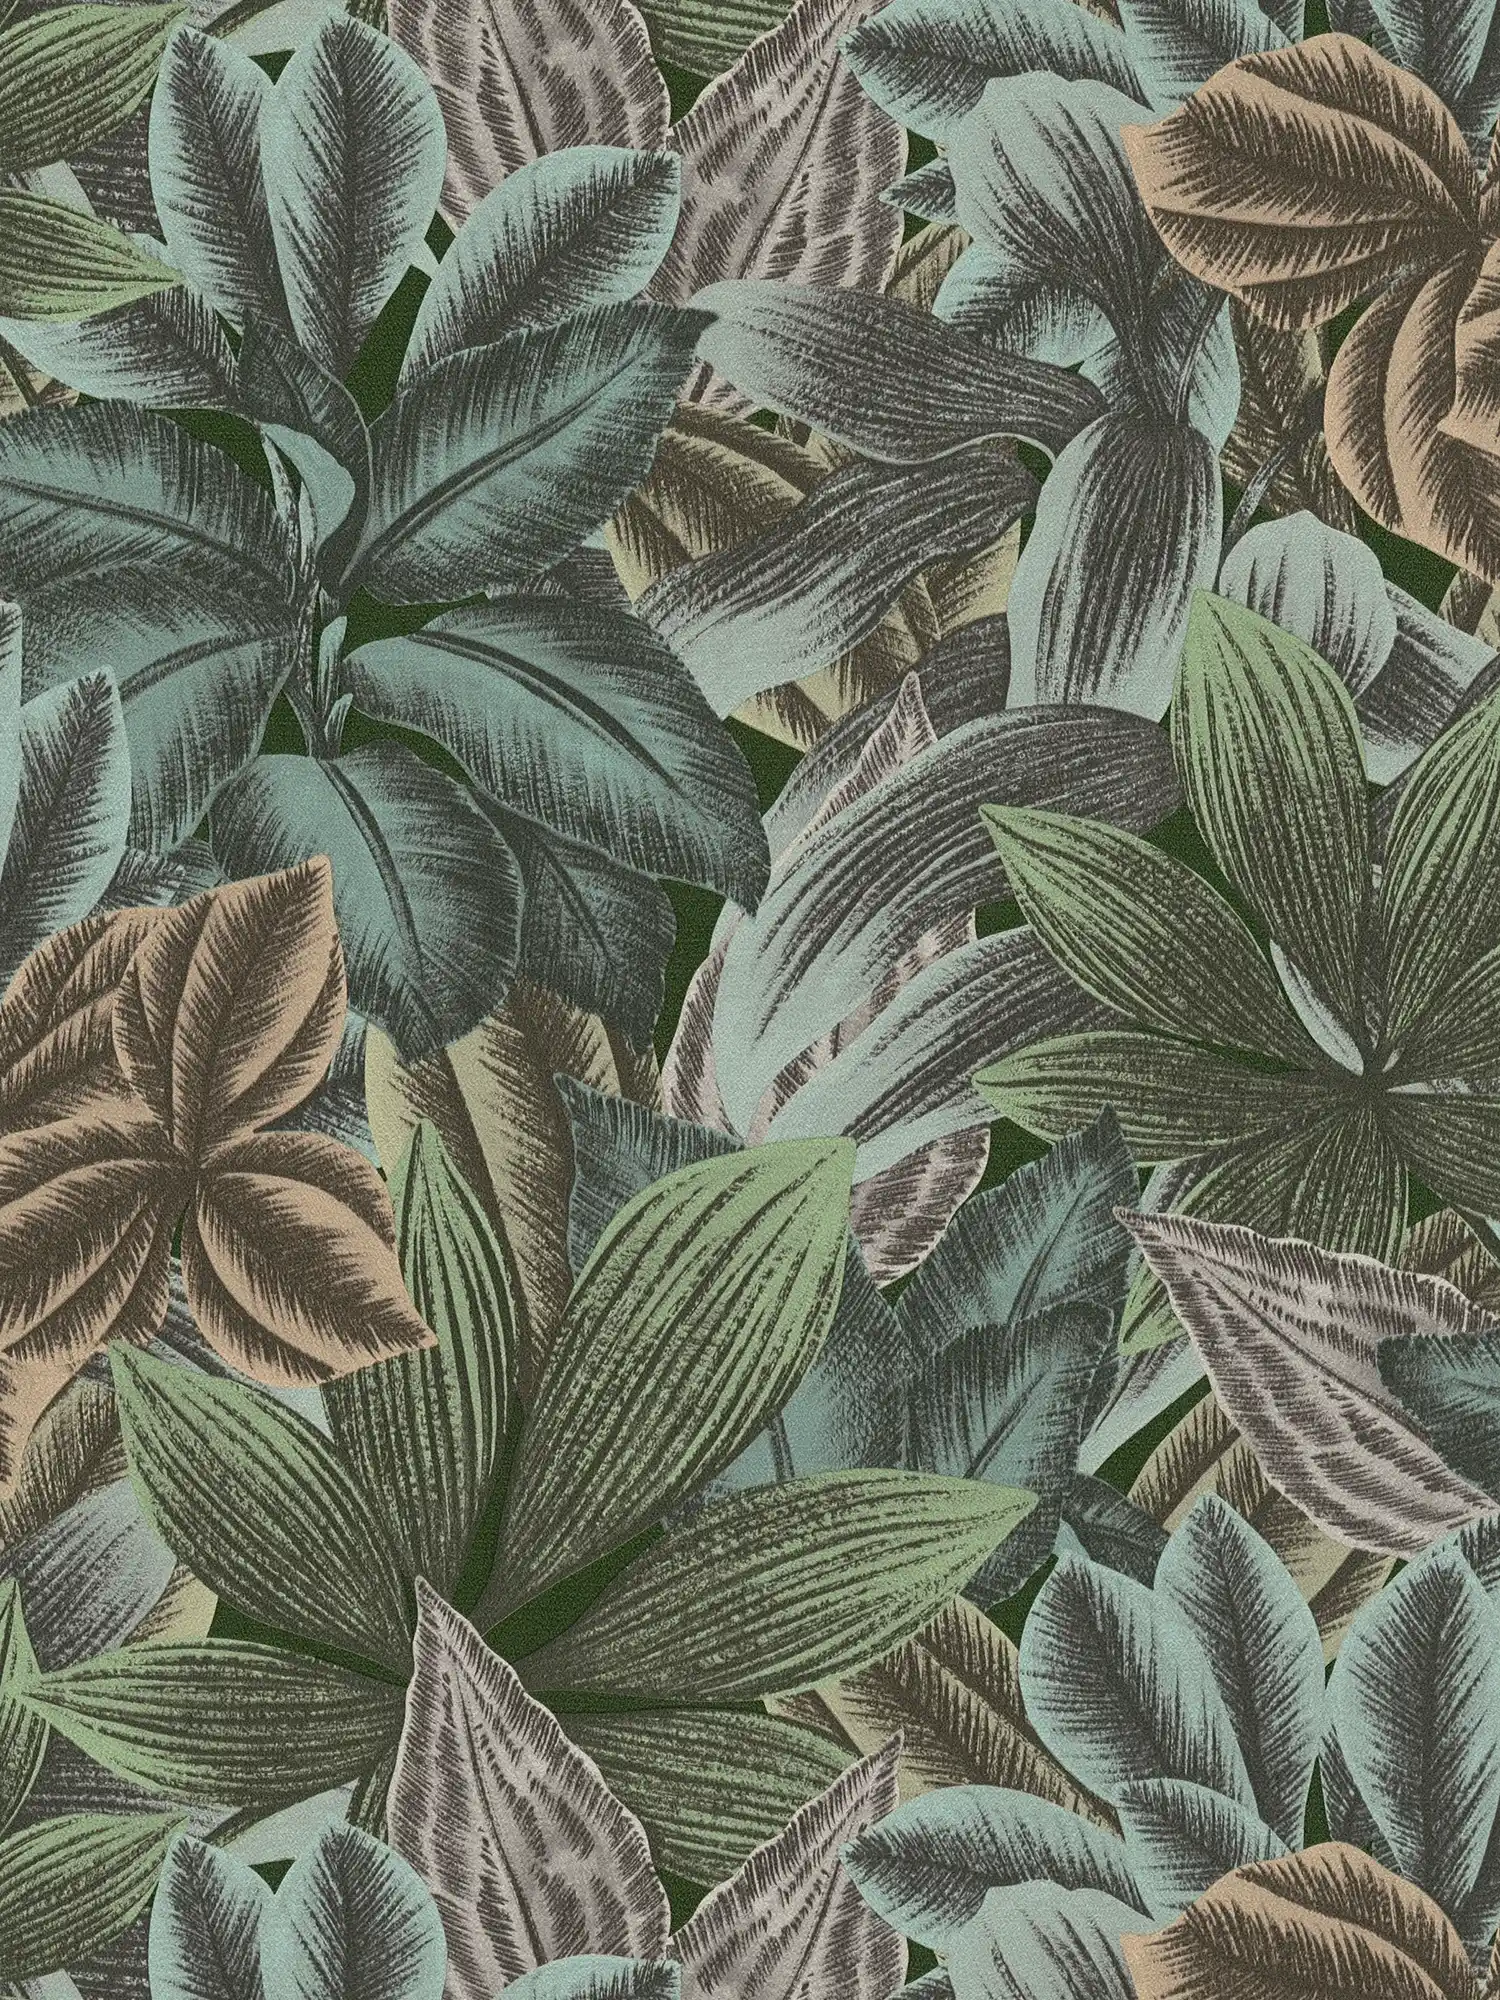 Papier peint à motifs de feuilles avec look tropical - vert, bleu, gris
